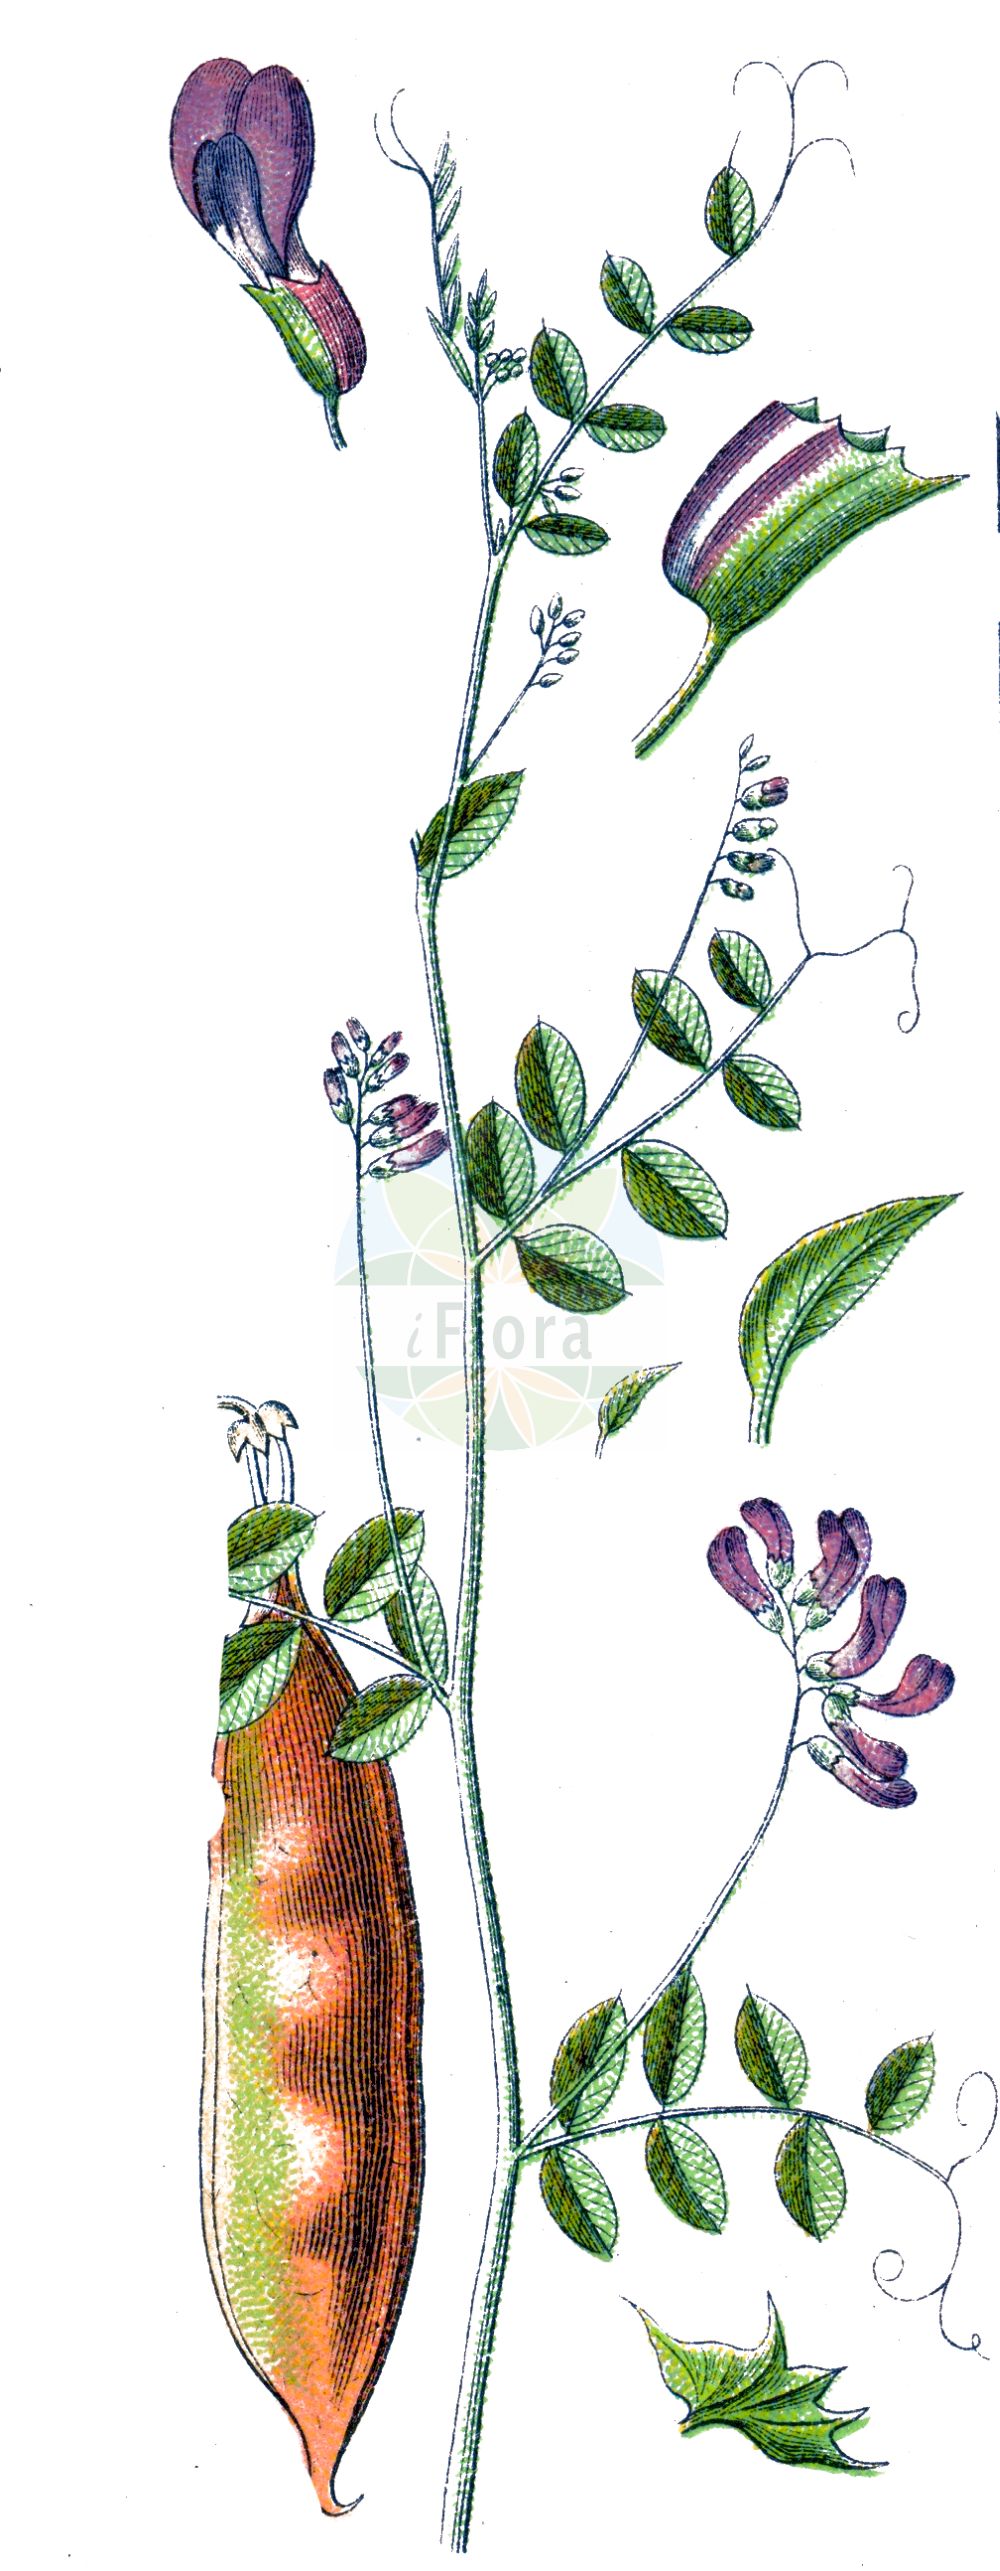 Historische Abbildung von Vicia dumetorum (Hecken-Wicke - Purple Wood Vetch). Das Bild zeigt Blatt, Bluete, Frucht und Same. ---- Historical Drawing of Vicia dumetorum (Hecken-Wicke - Purple Wood Vetch). The image is showing leaf, flower, fruit and seed.(Vicia dumetorum,Hecken-Wicke,Purple Wood Vetch,Abacosa dumetorum,Vicia dumetorum,Vicia variegata,Hecken-Wicke,Hain-Wicke,Purple Wood Vetch,Vicia,Wicke,Vetch,Fabaceae,Schmetterlingsblütler,Pea family,Blatt,Bluete,Frucht,Same,leaf,flower,fruit,seed,Sturm (1796f))